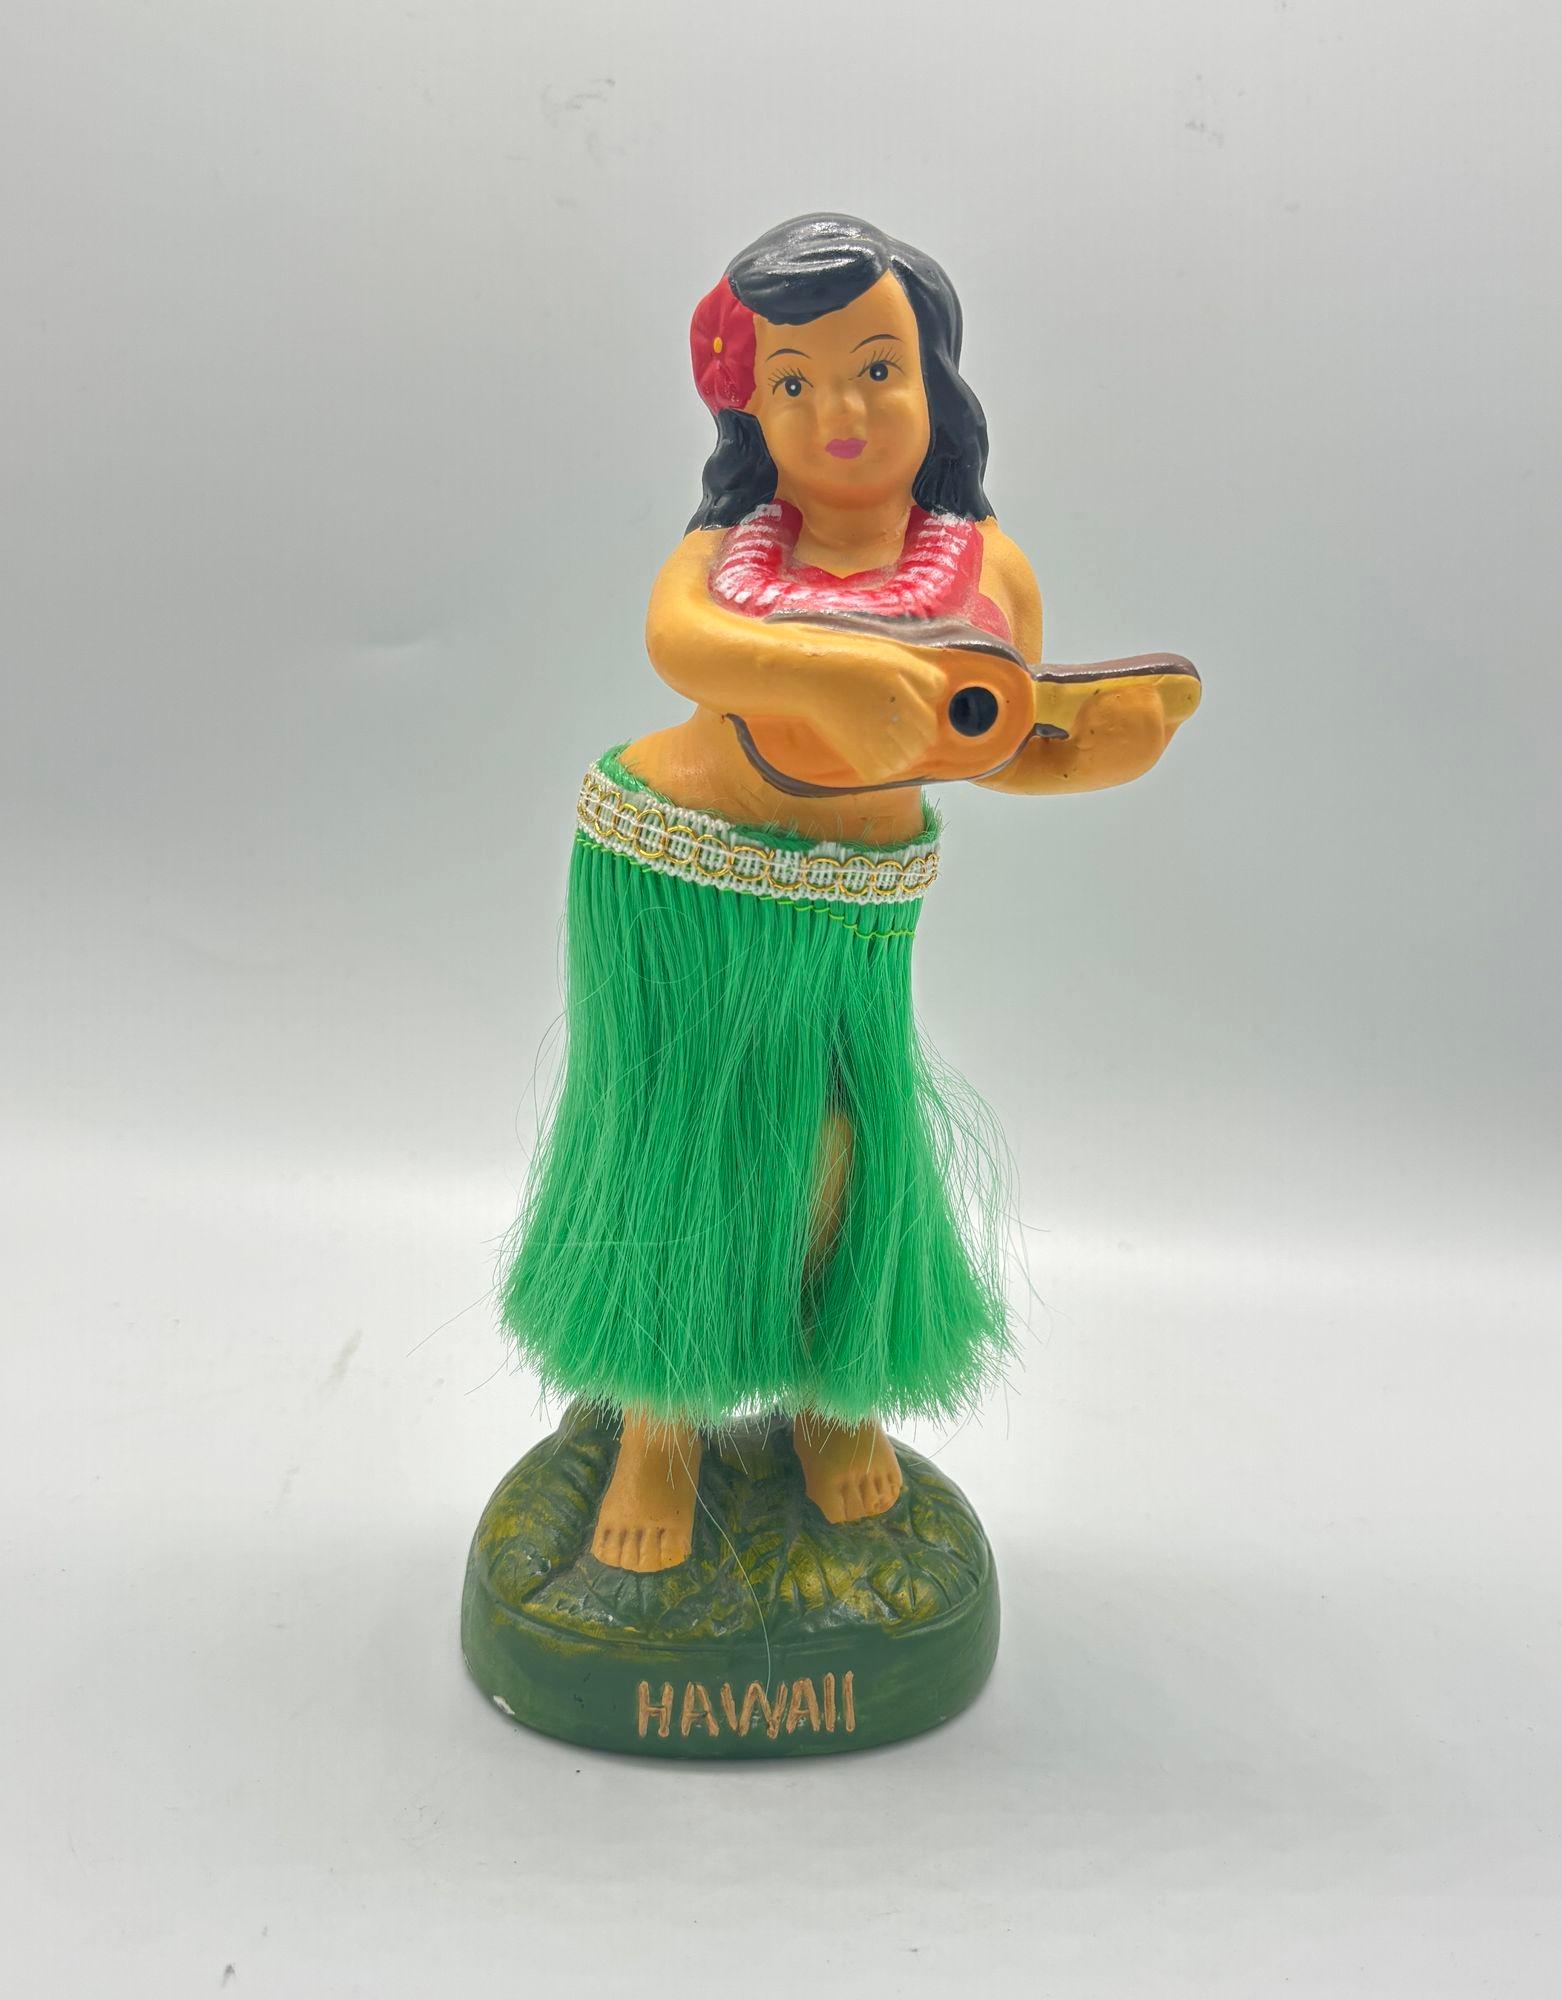 Figurine en céramique représentant une jeune fille hawaïenne vêtue d'une tenue traditionnelle hawaïenne, comprenant une robe florale colorée, un lei de fleurs autour du cou et une fleur dans les cheveux. Elle repose sur un socle doté d'un mécanisme